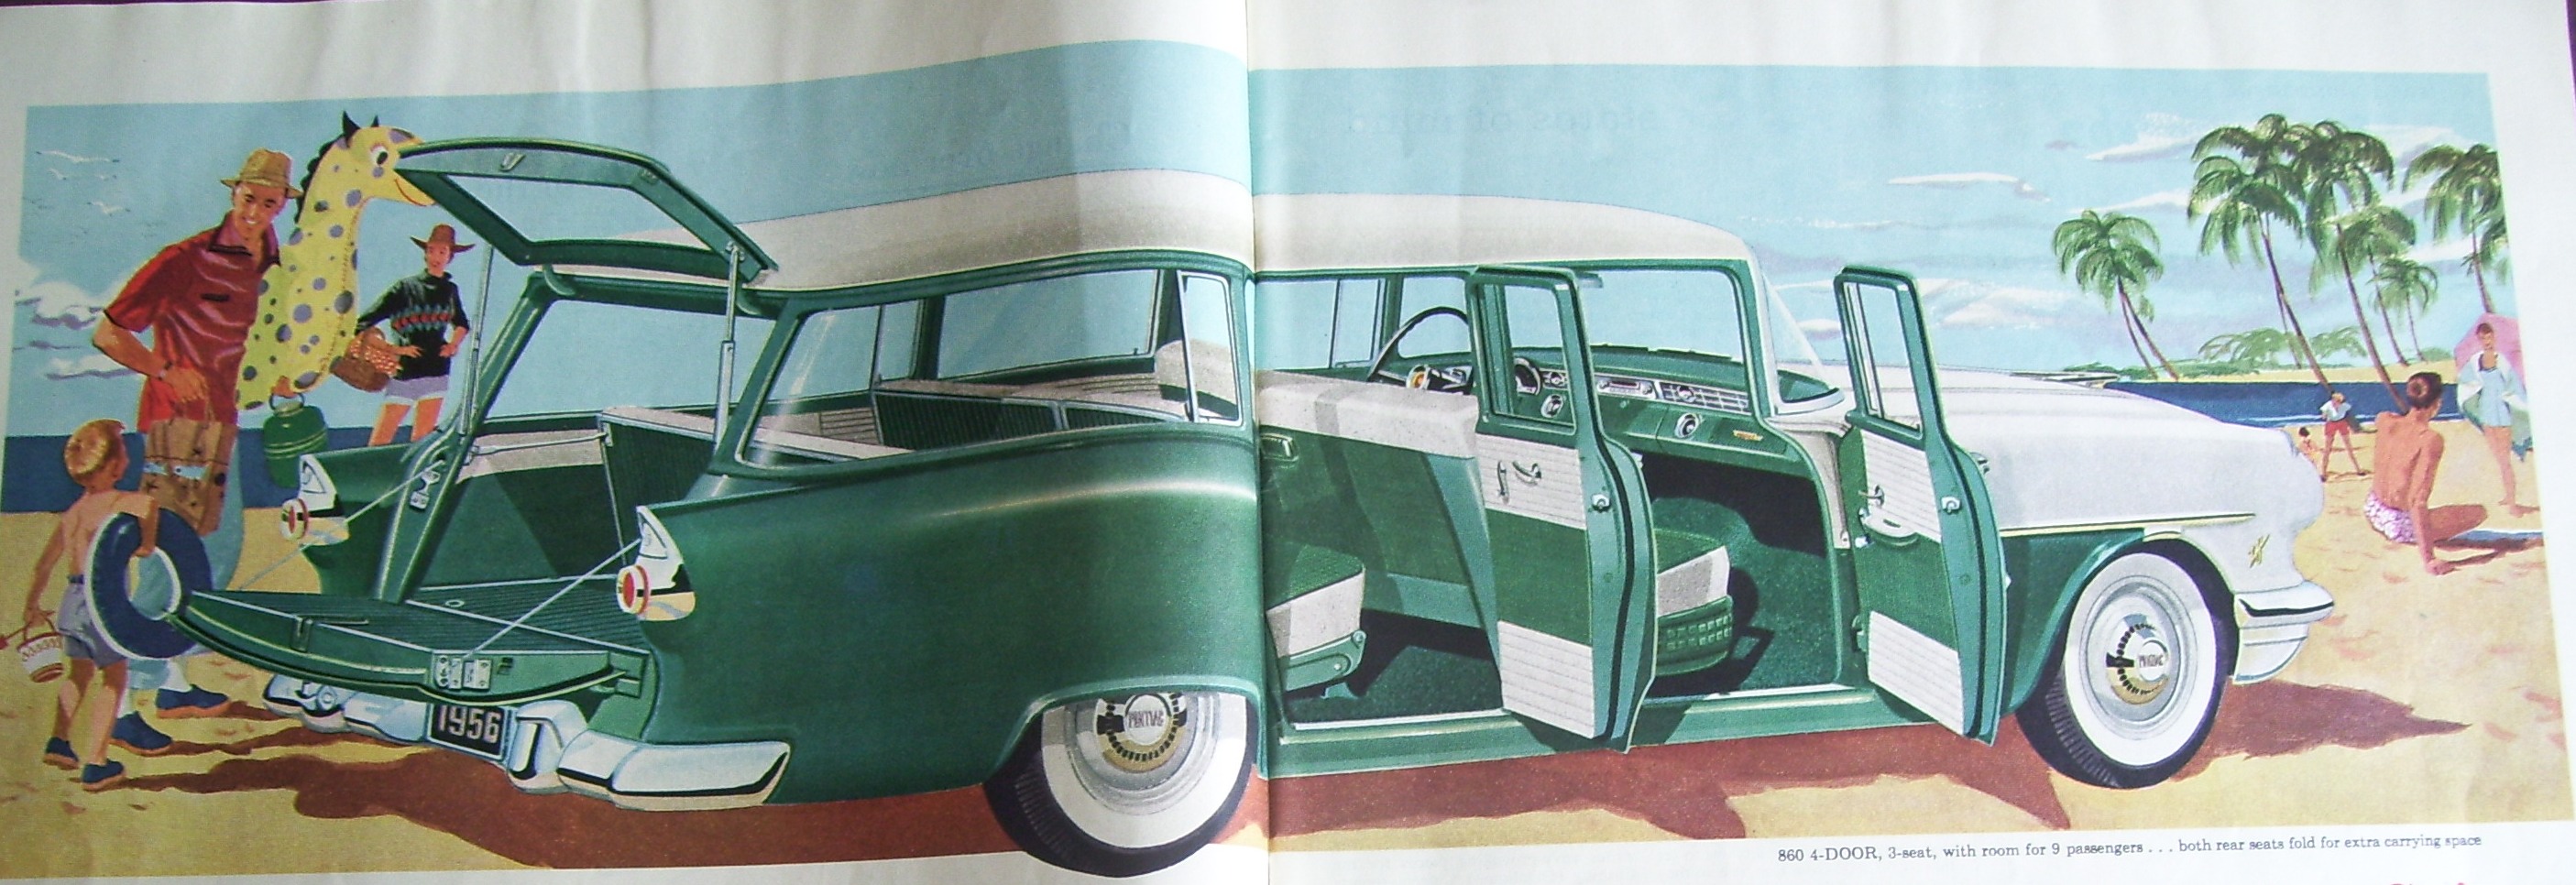 1956 pontiac 4 door